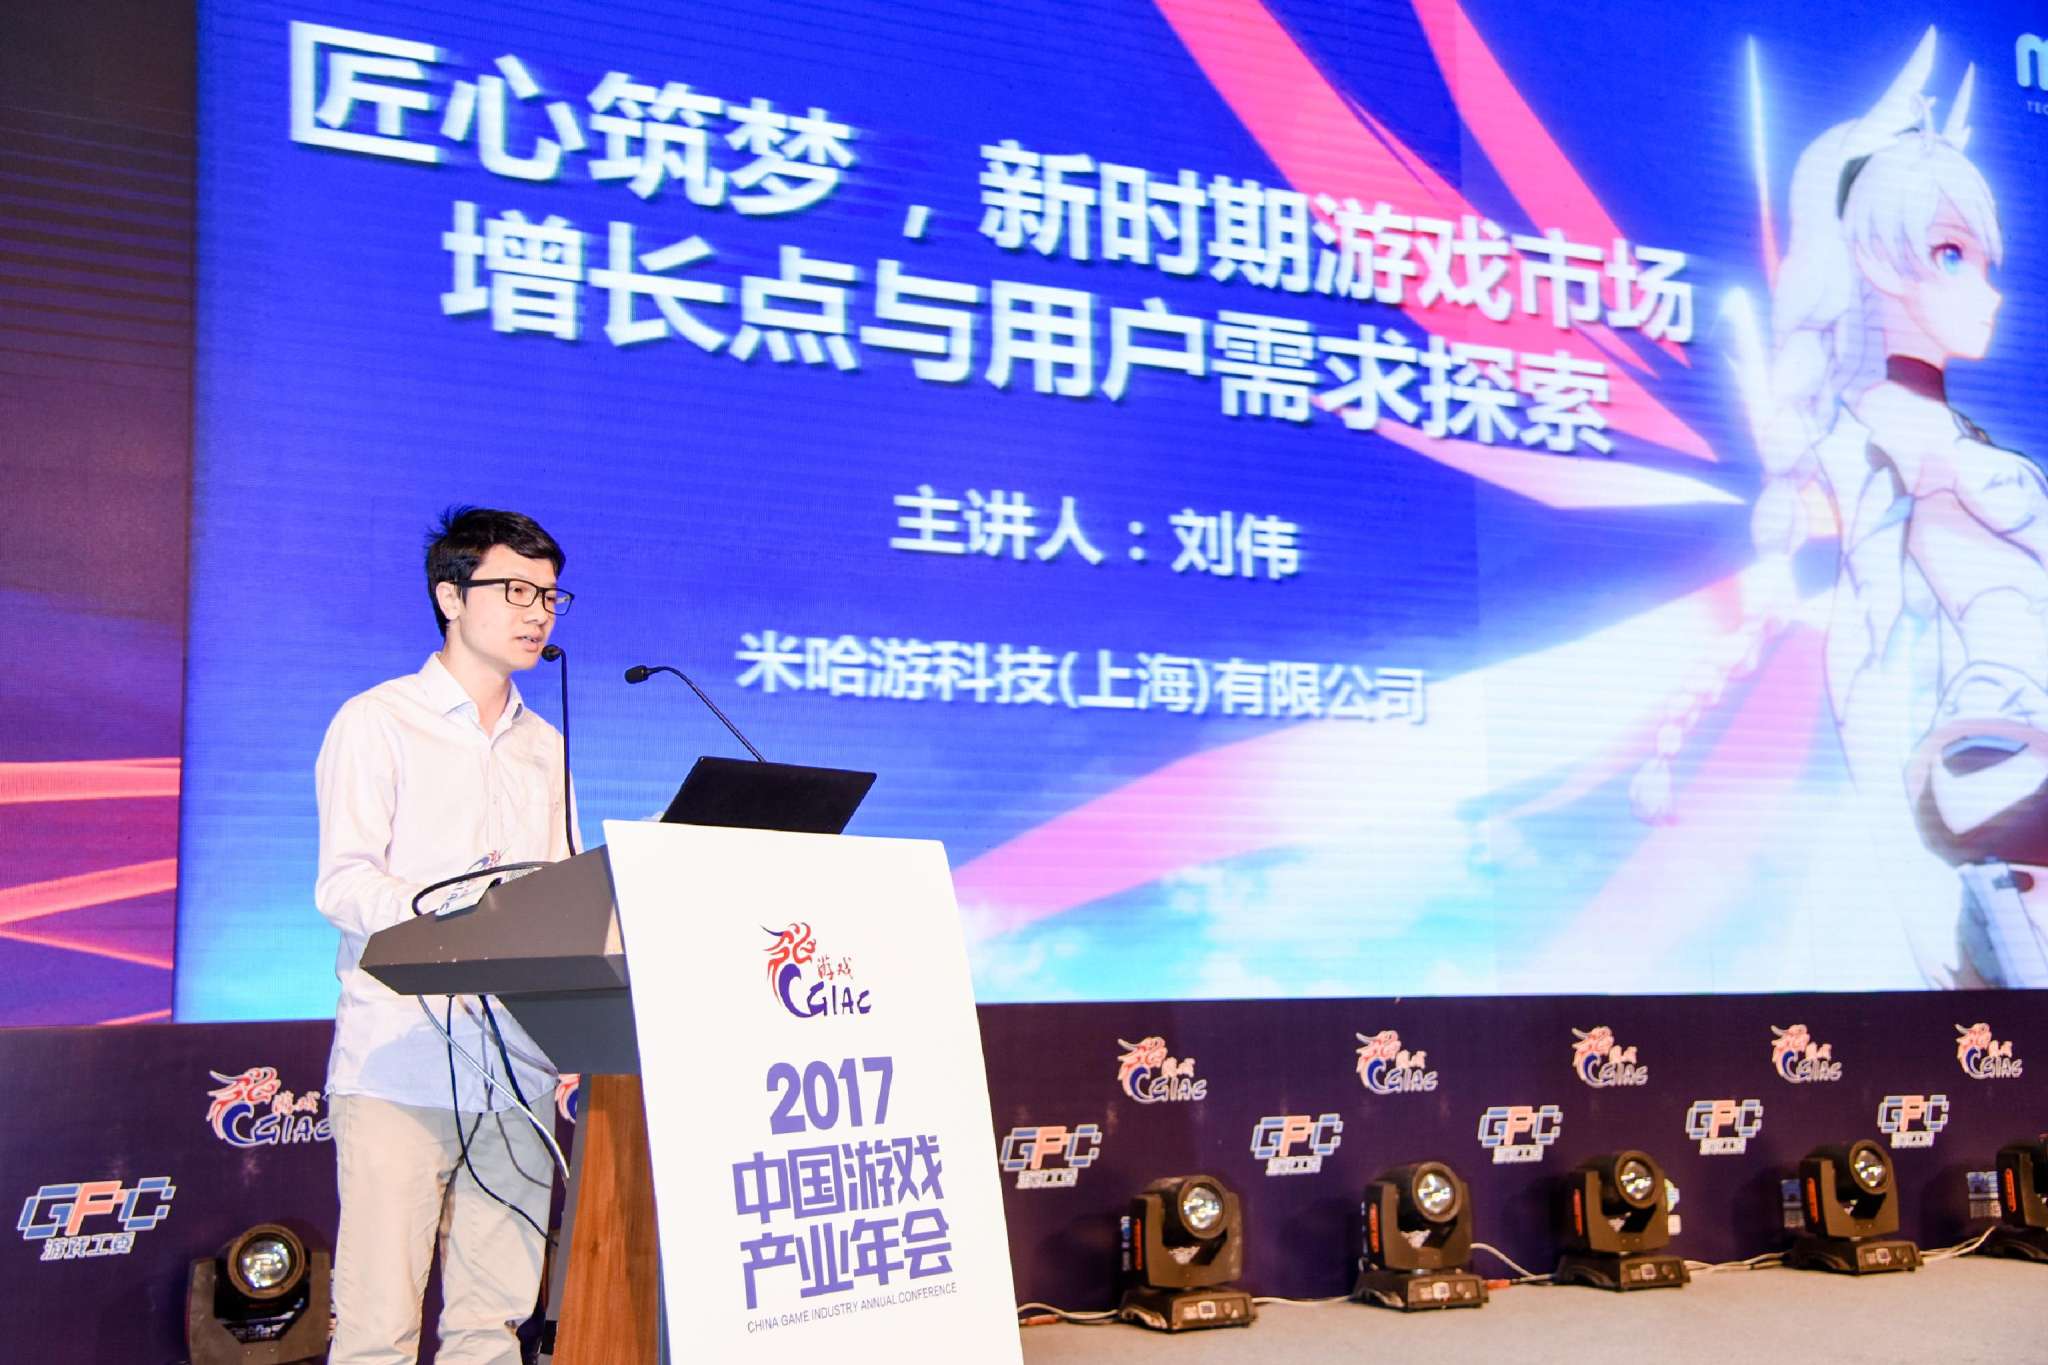 2017年度中国游戏产业年会 米哈游刘伟:新时期游戏市场增长点与用户